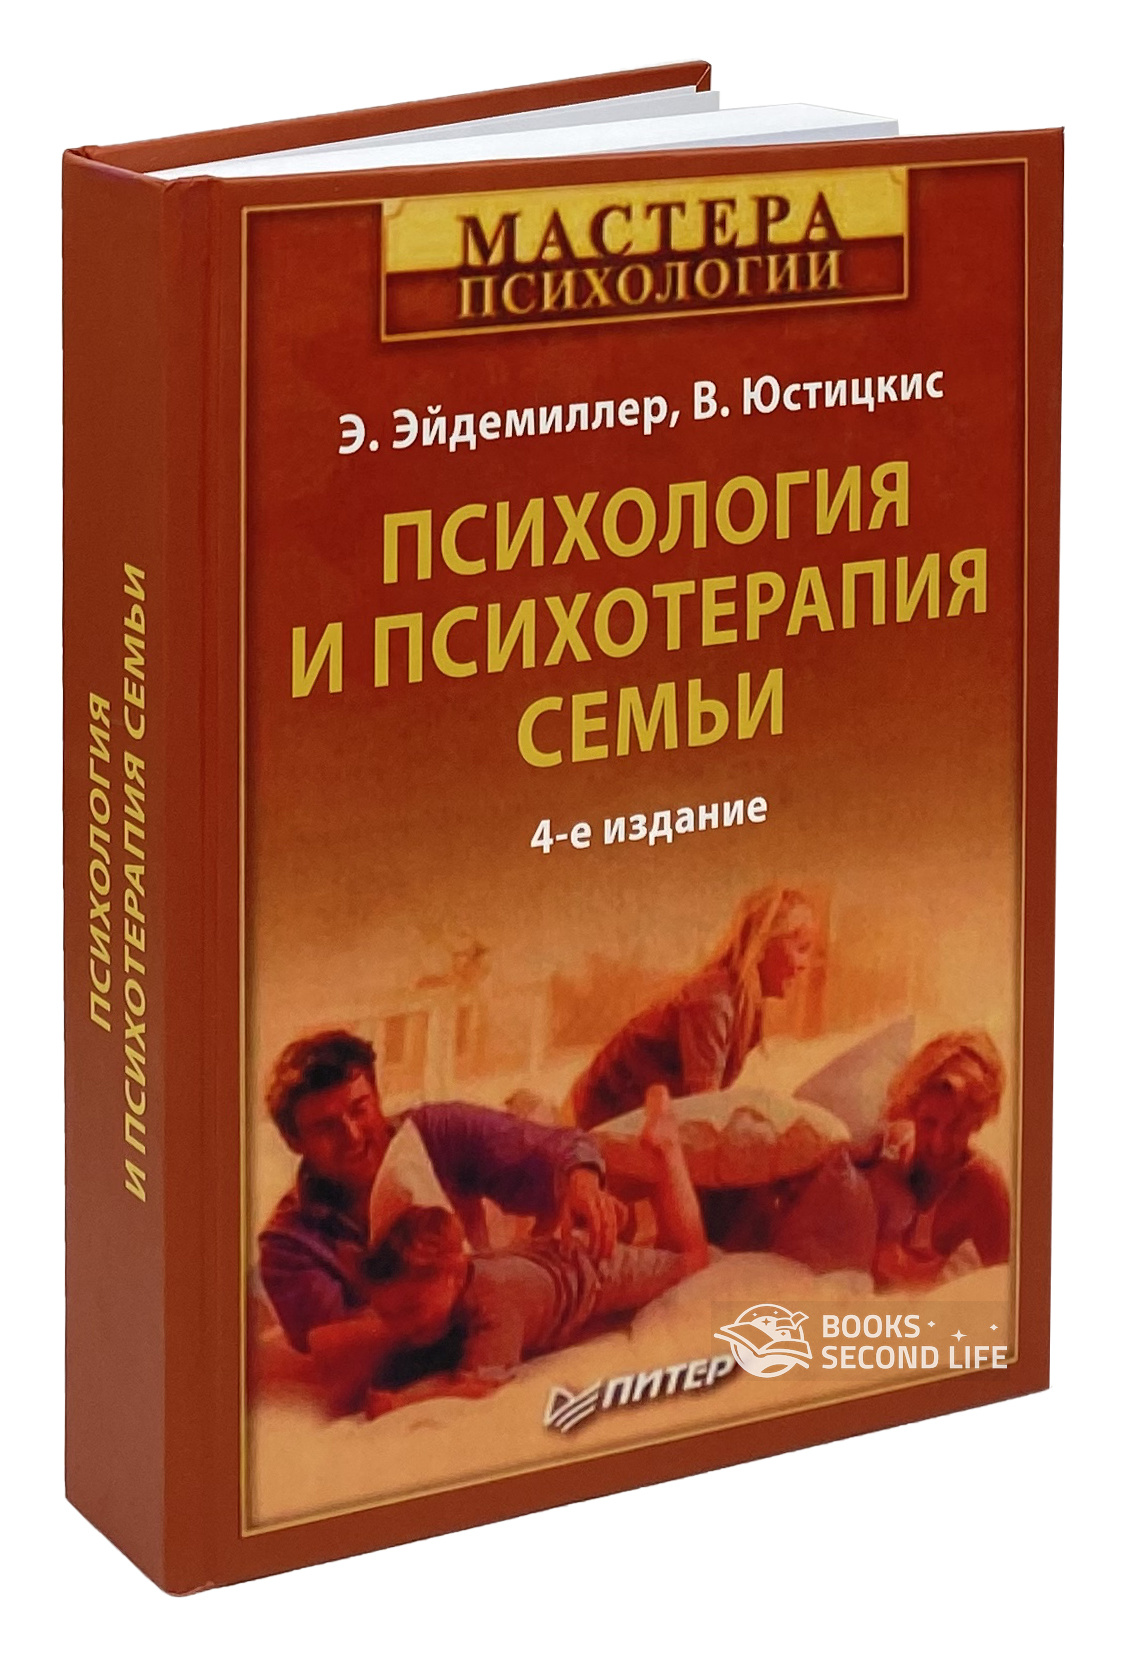 Психология и психотерапия семьи. Автор — Э. Эйдемиллер, В. Юстицкис. 